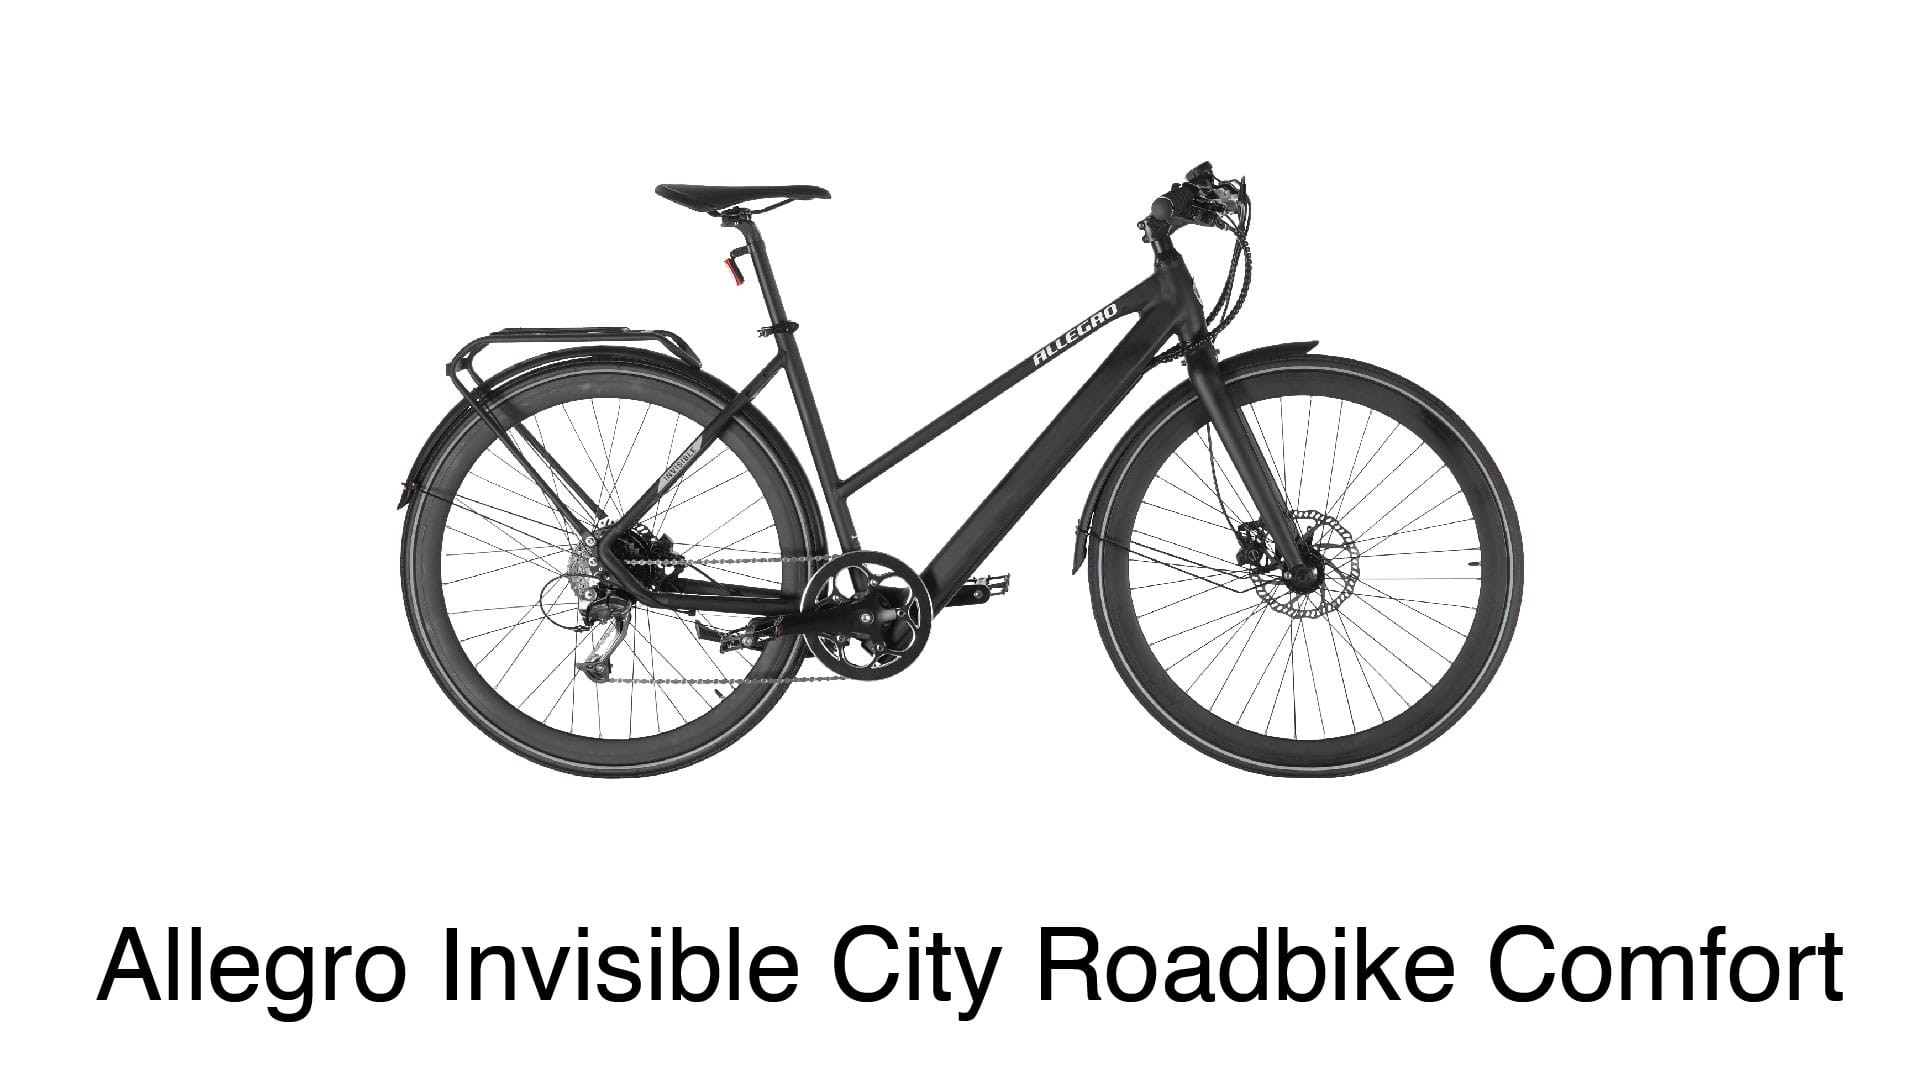 Ein sportliches Urban-Rad im Aerodesign: Allegro Invisible City Roadbike Comfort.